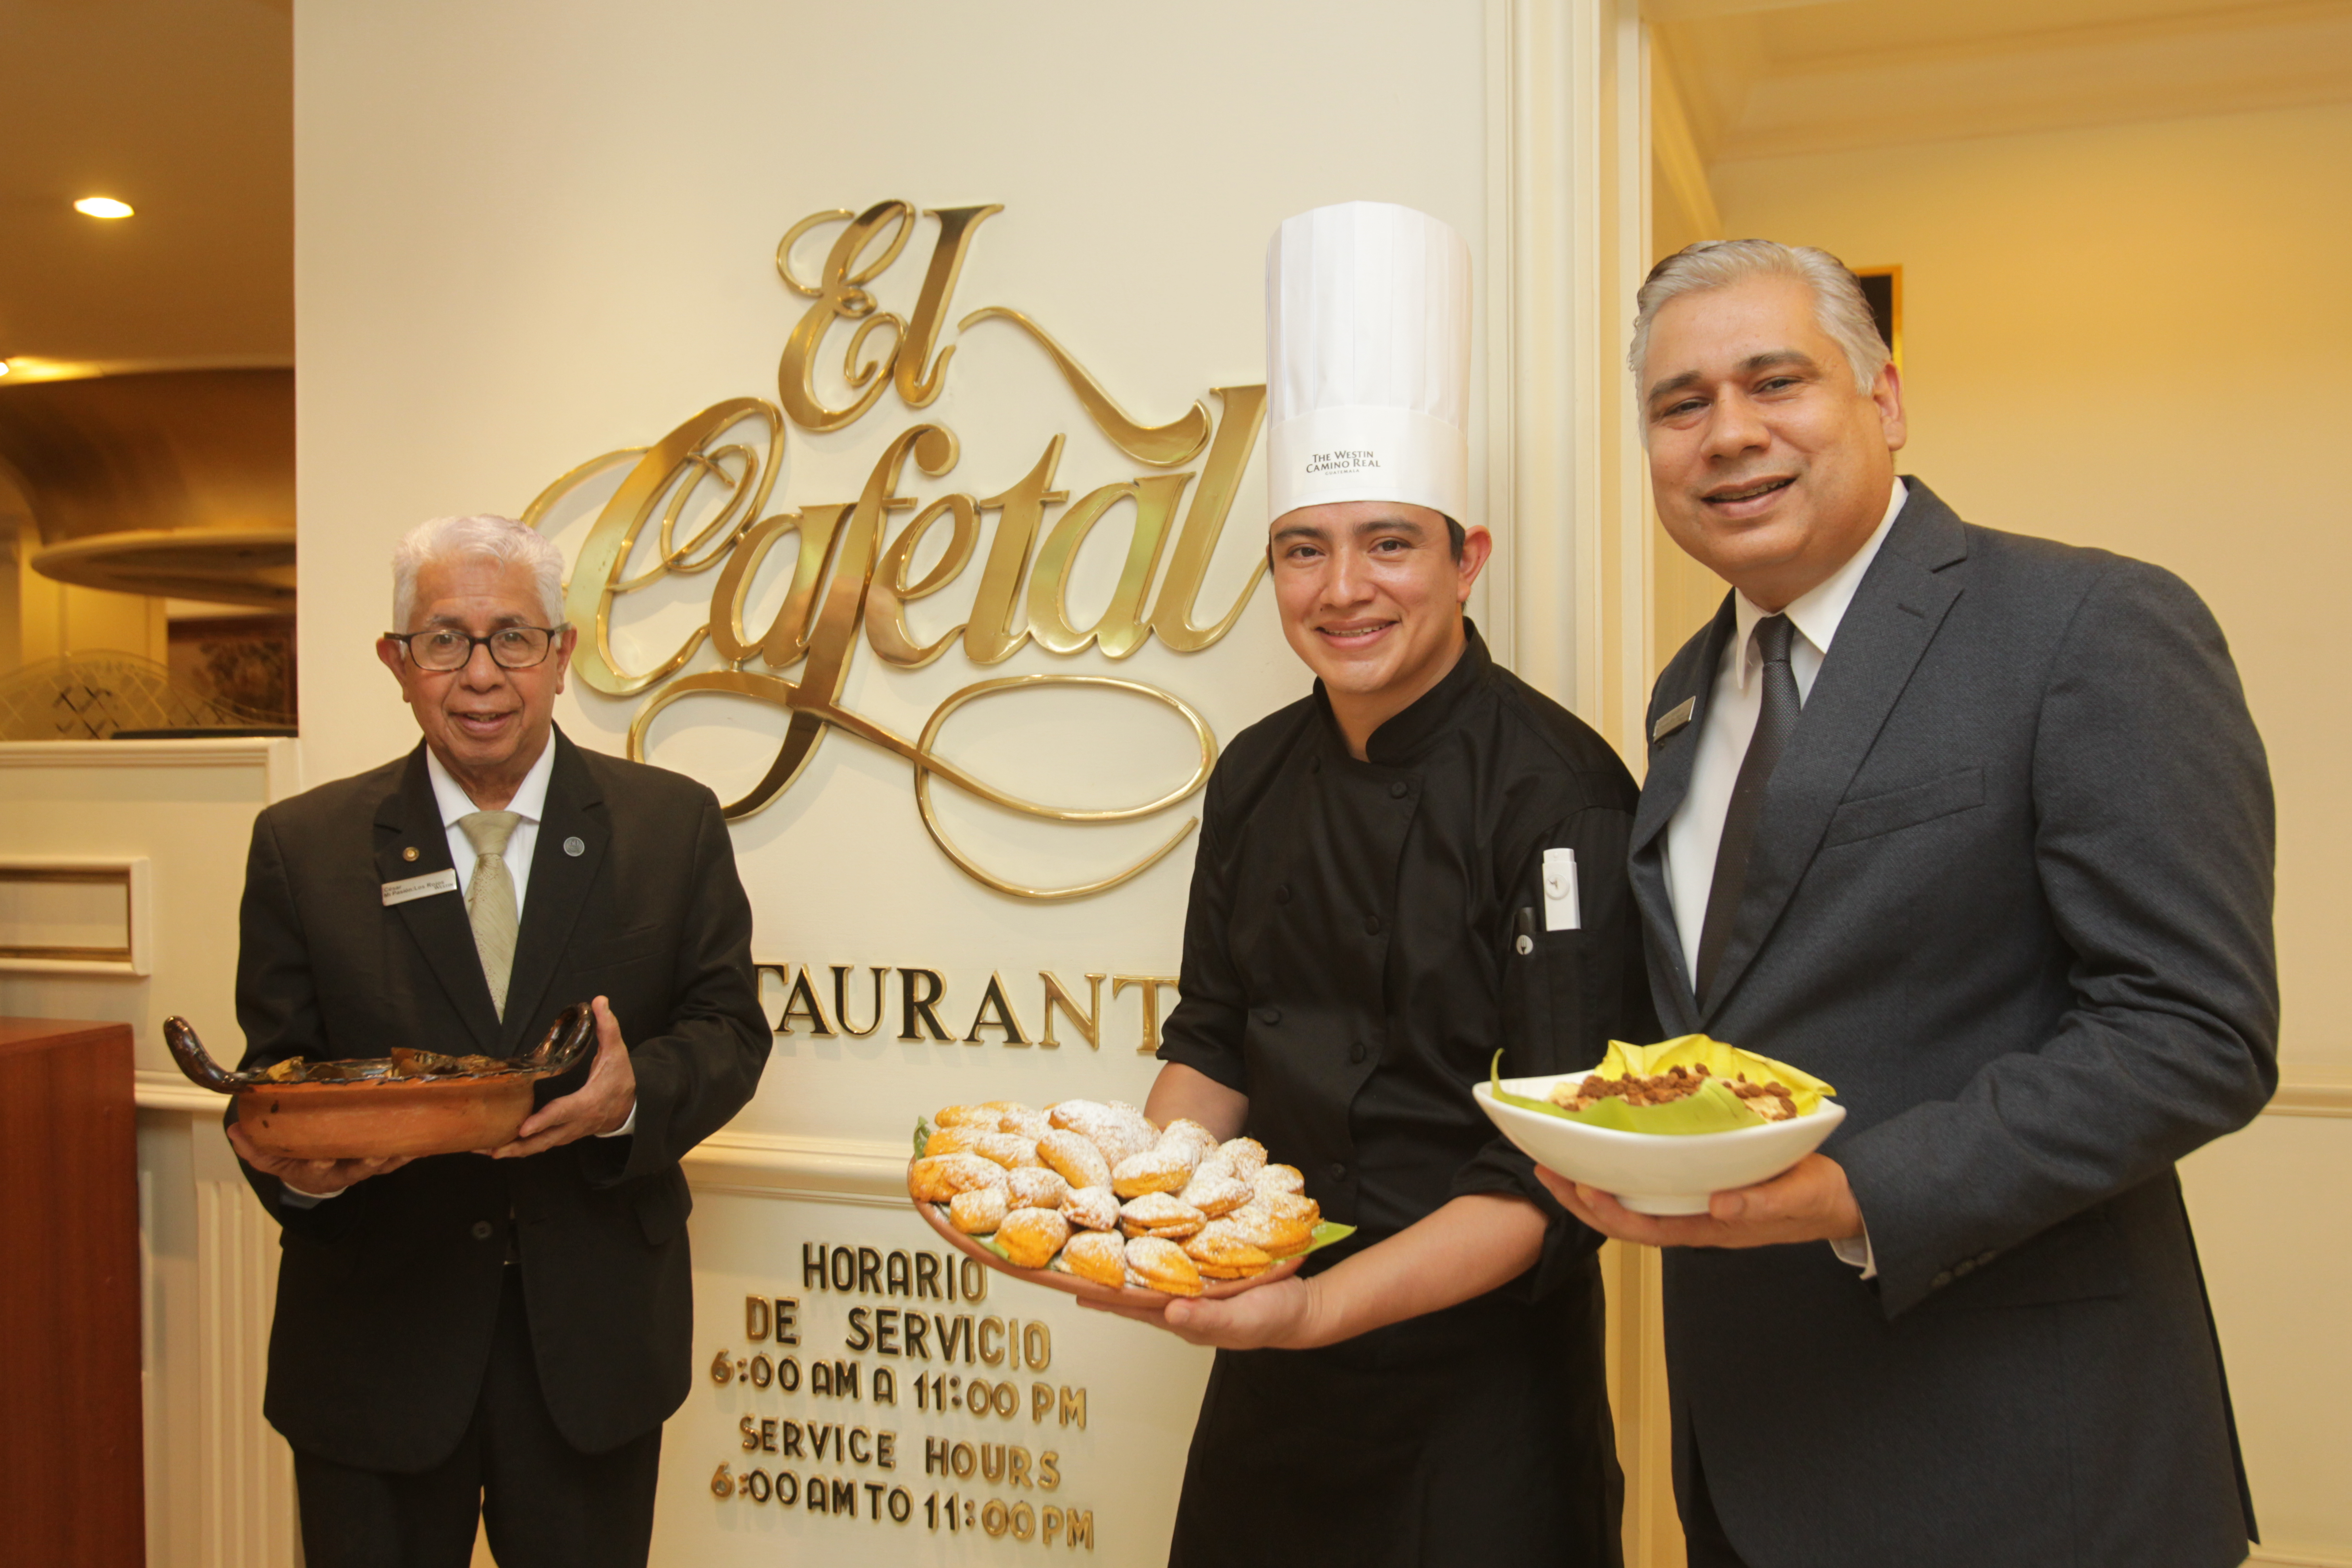 El Cafetal del Hotel Camino Real tiene a disposición de sus visitantes la gastronomía guatemalteca. Foto Norvin Mendoza